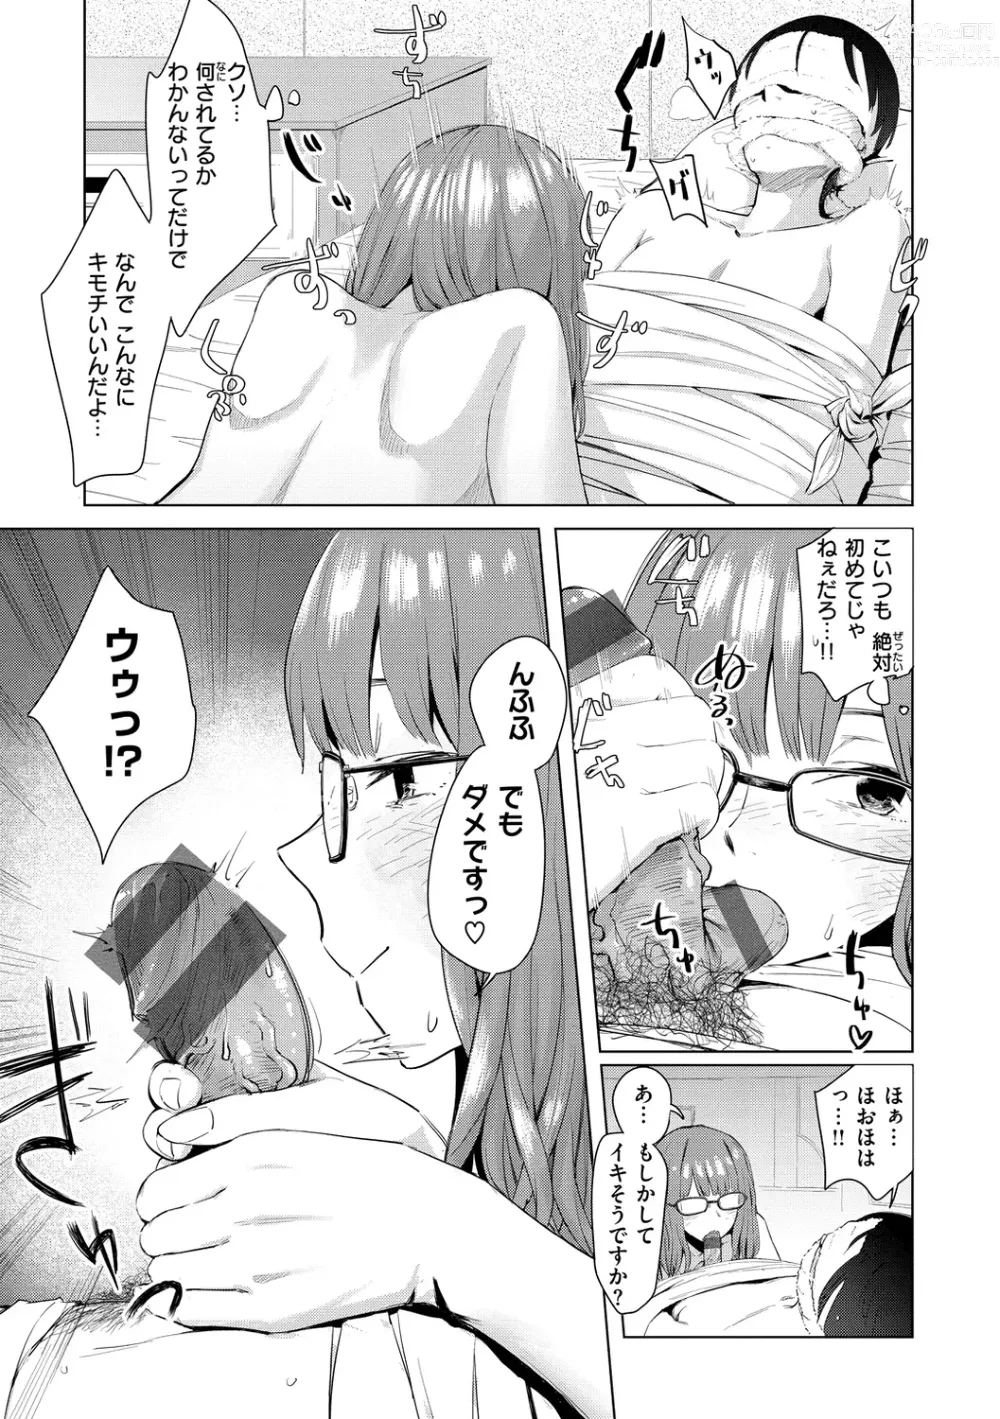 Page 13 of manga Yabai Onna